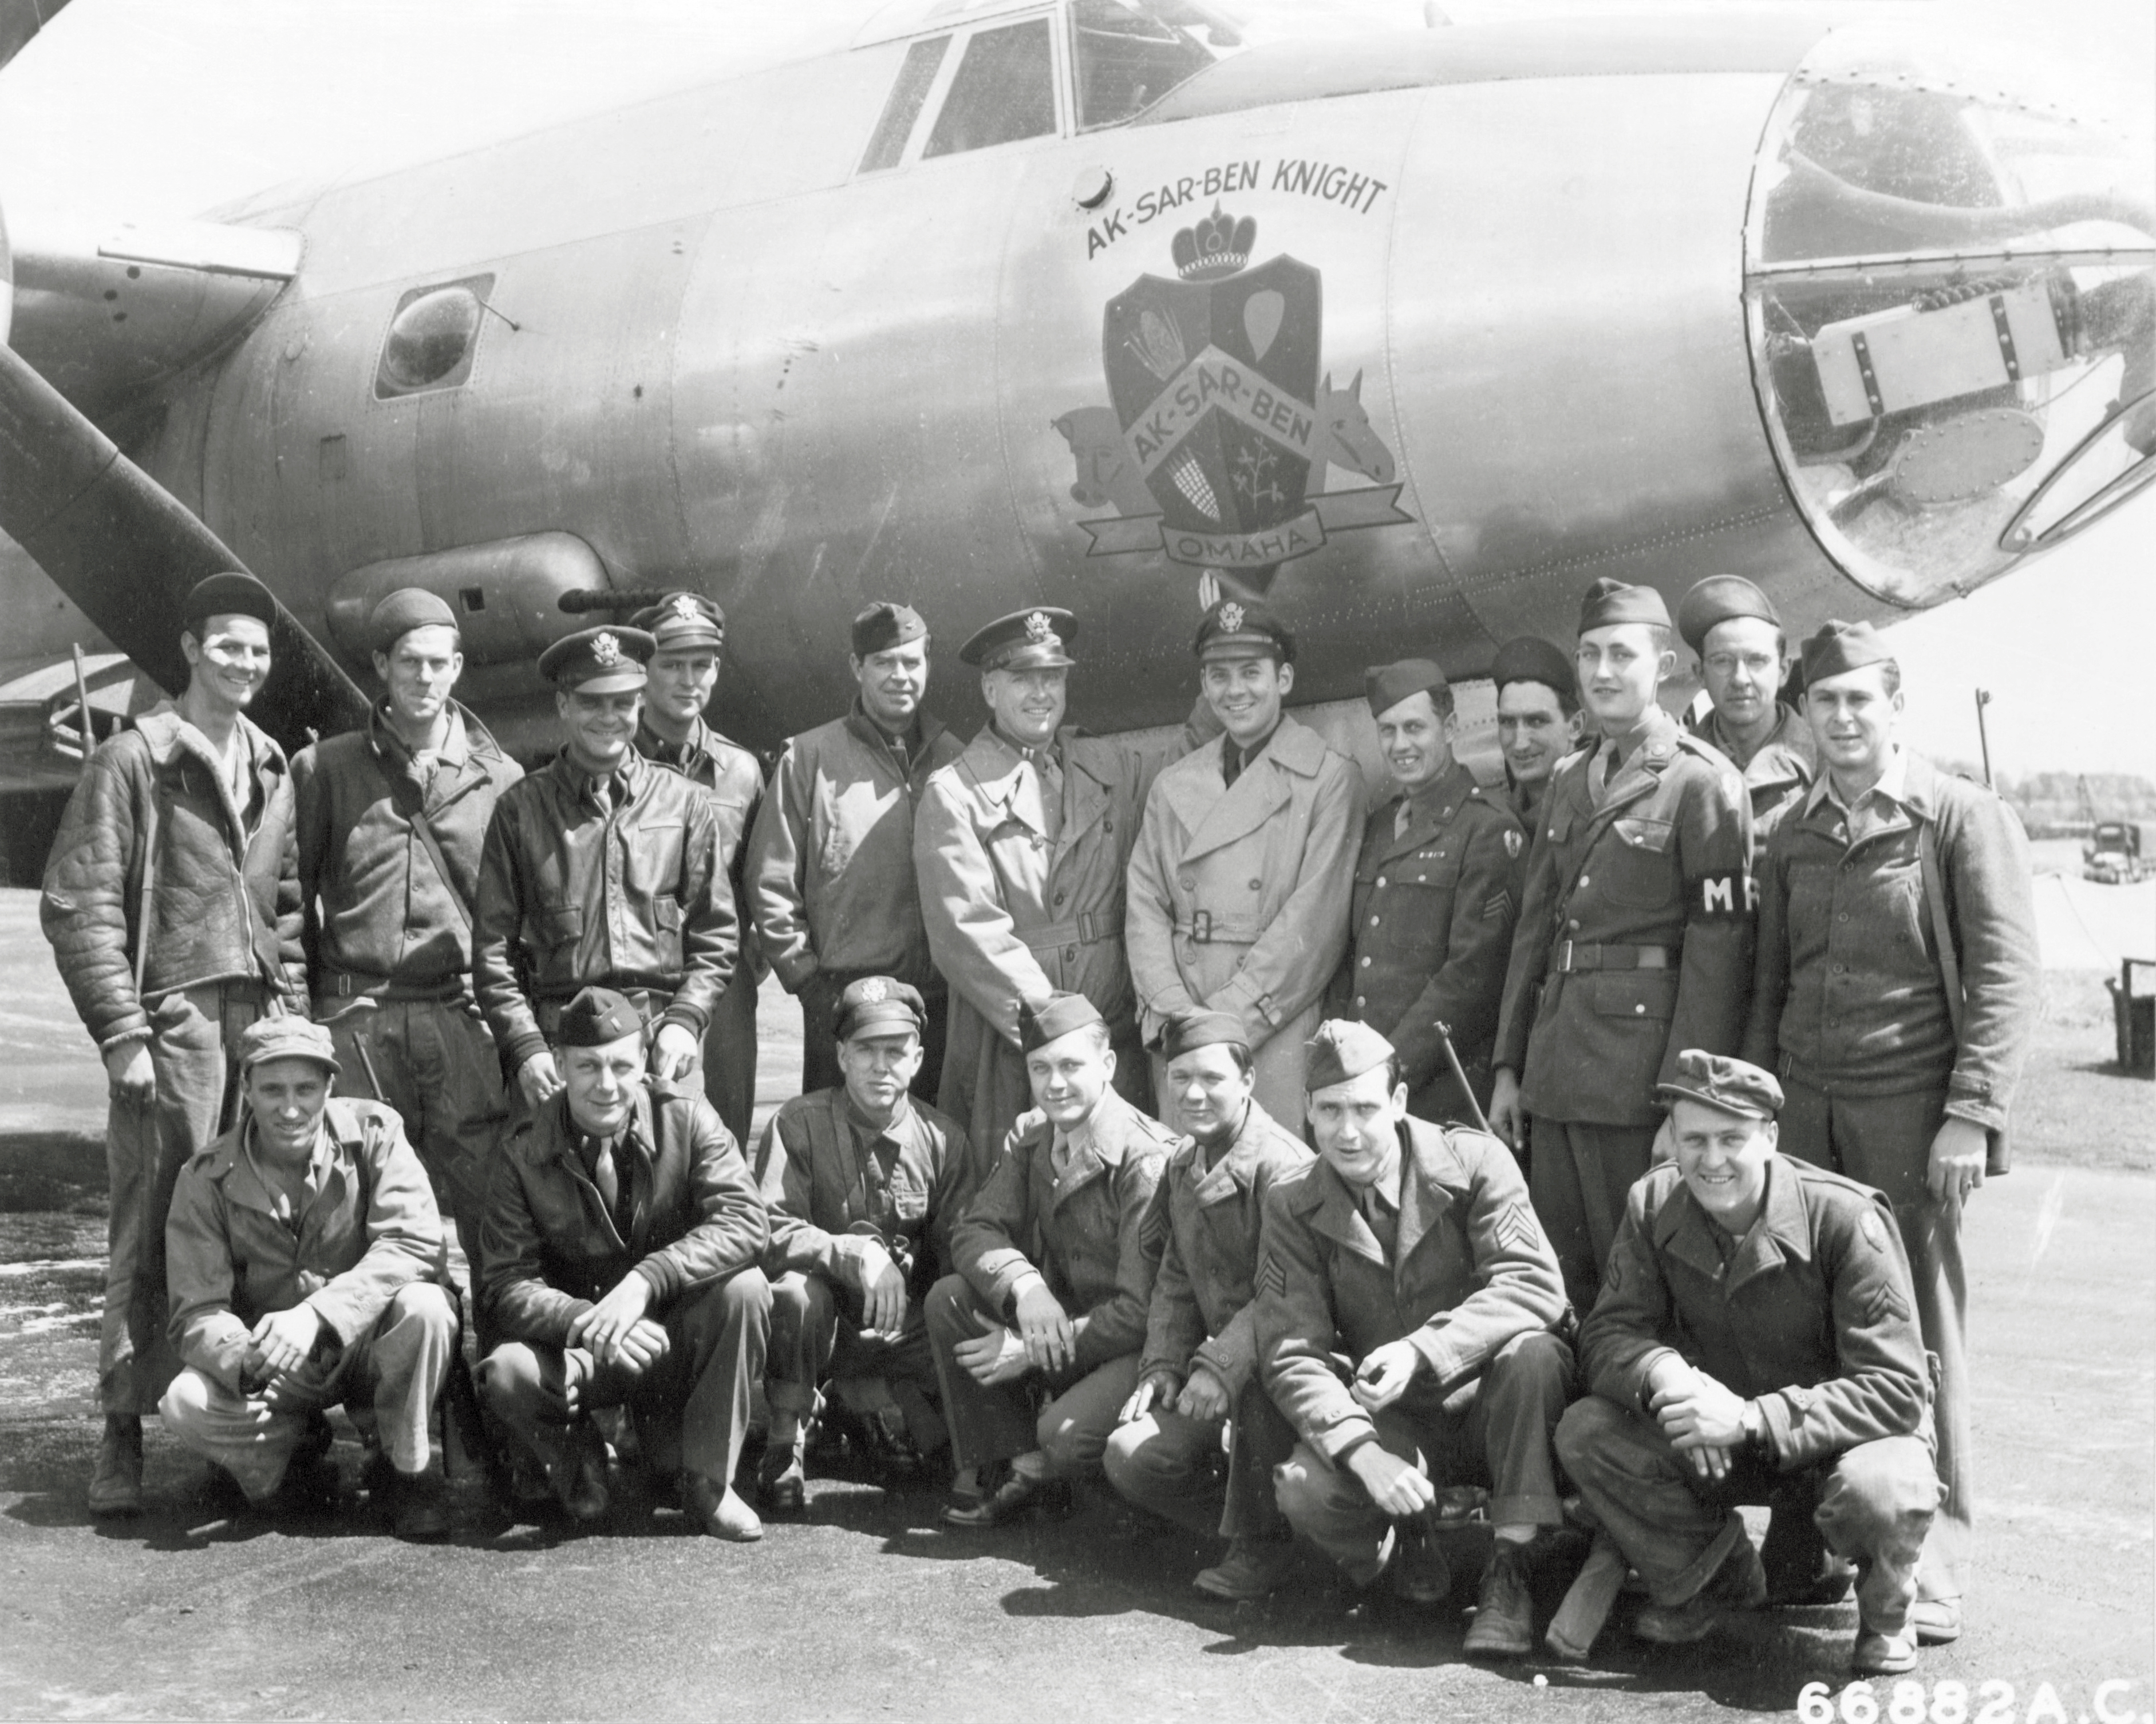 42 107806 B 26C Marauder 391BG573BS T6C Ak Sar Ben Knight with crew in England 16th Jun 1944 NA669